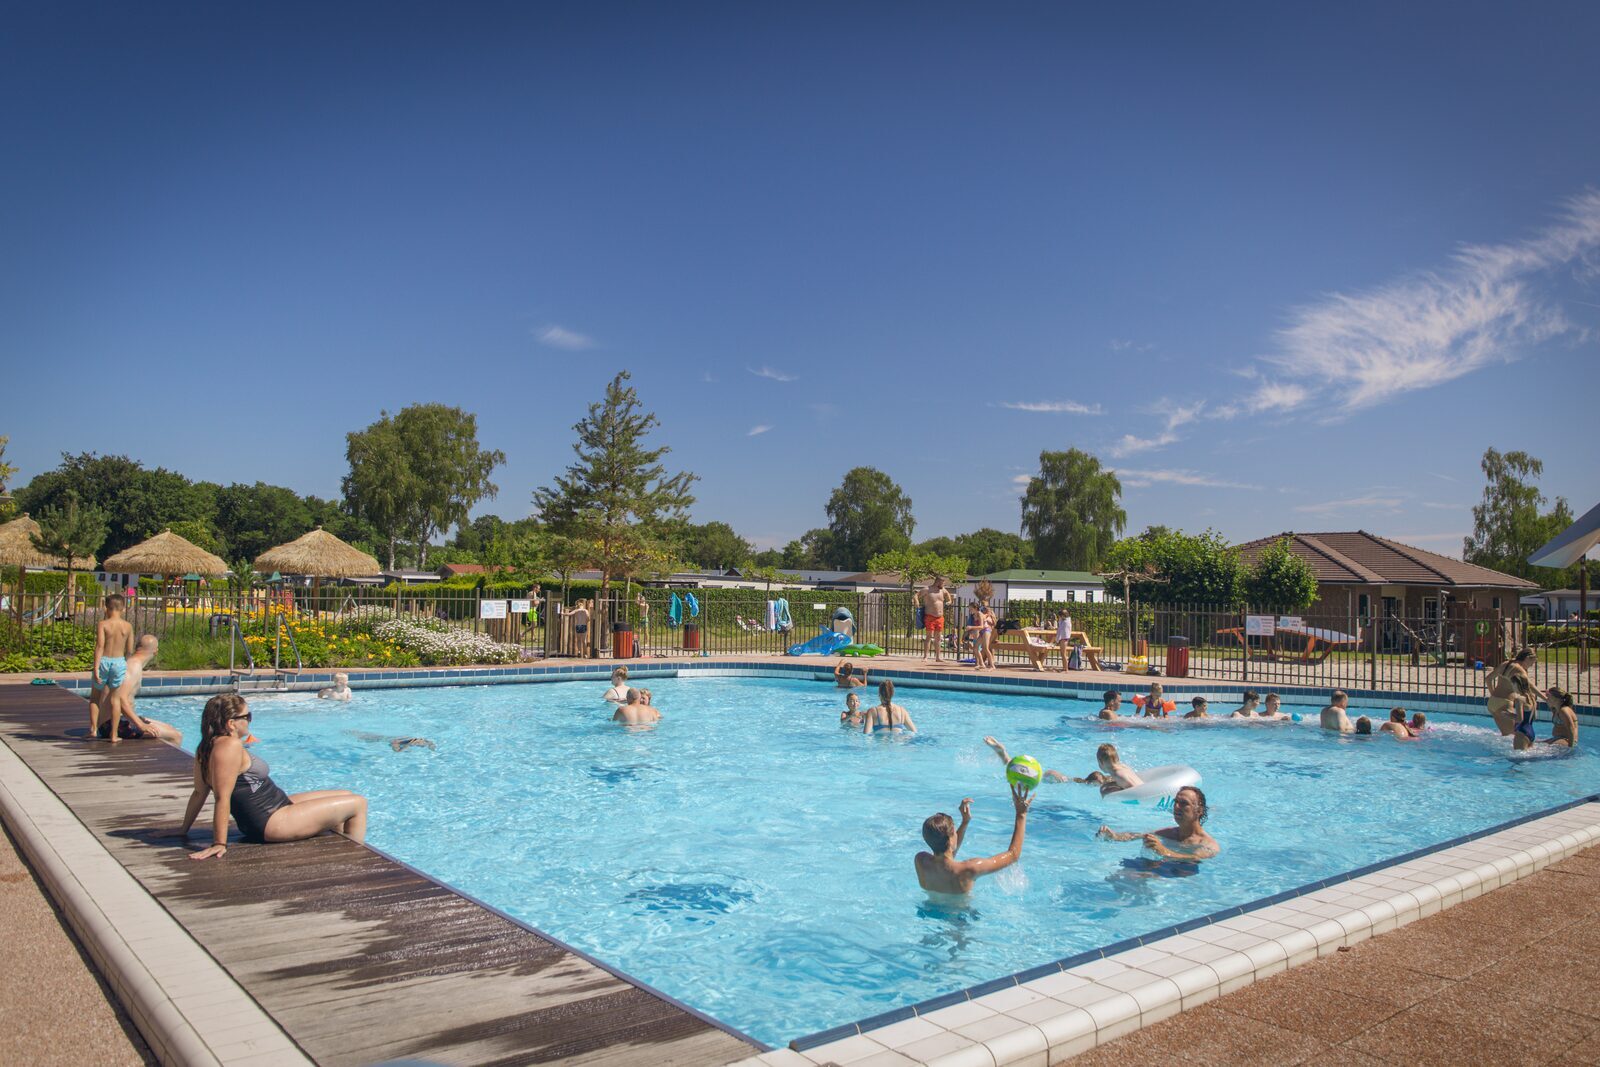 Vakantiepark met buiten- en binnenzwembad